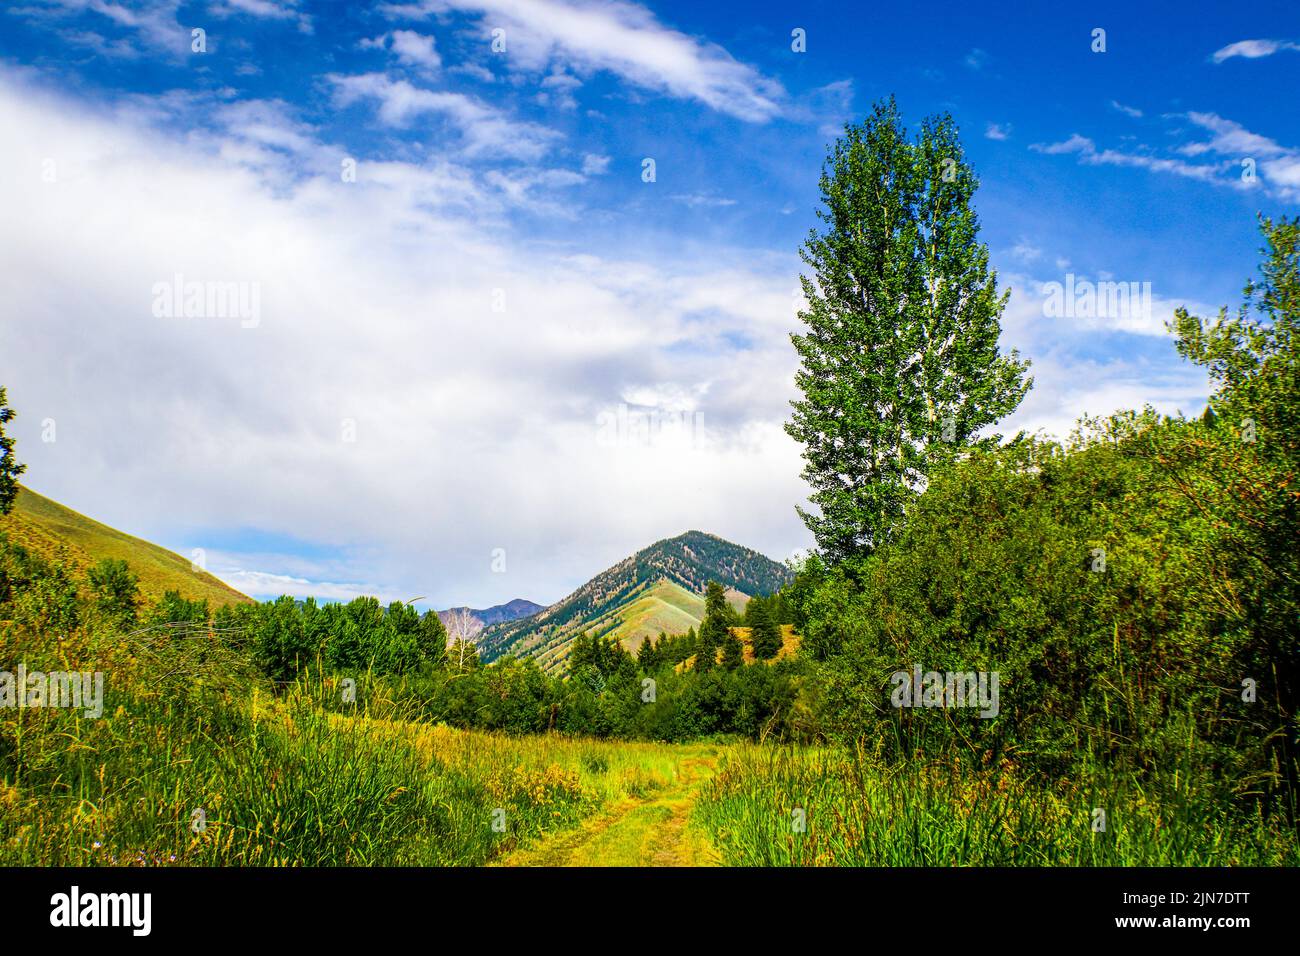 El camino no tomado - Utah Paisaje con sendero de prado que conduce a través de bosques a las montañas Foto de stock